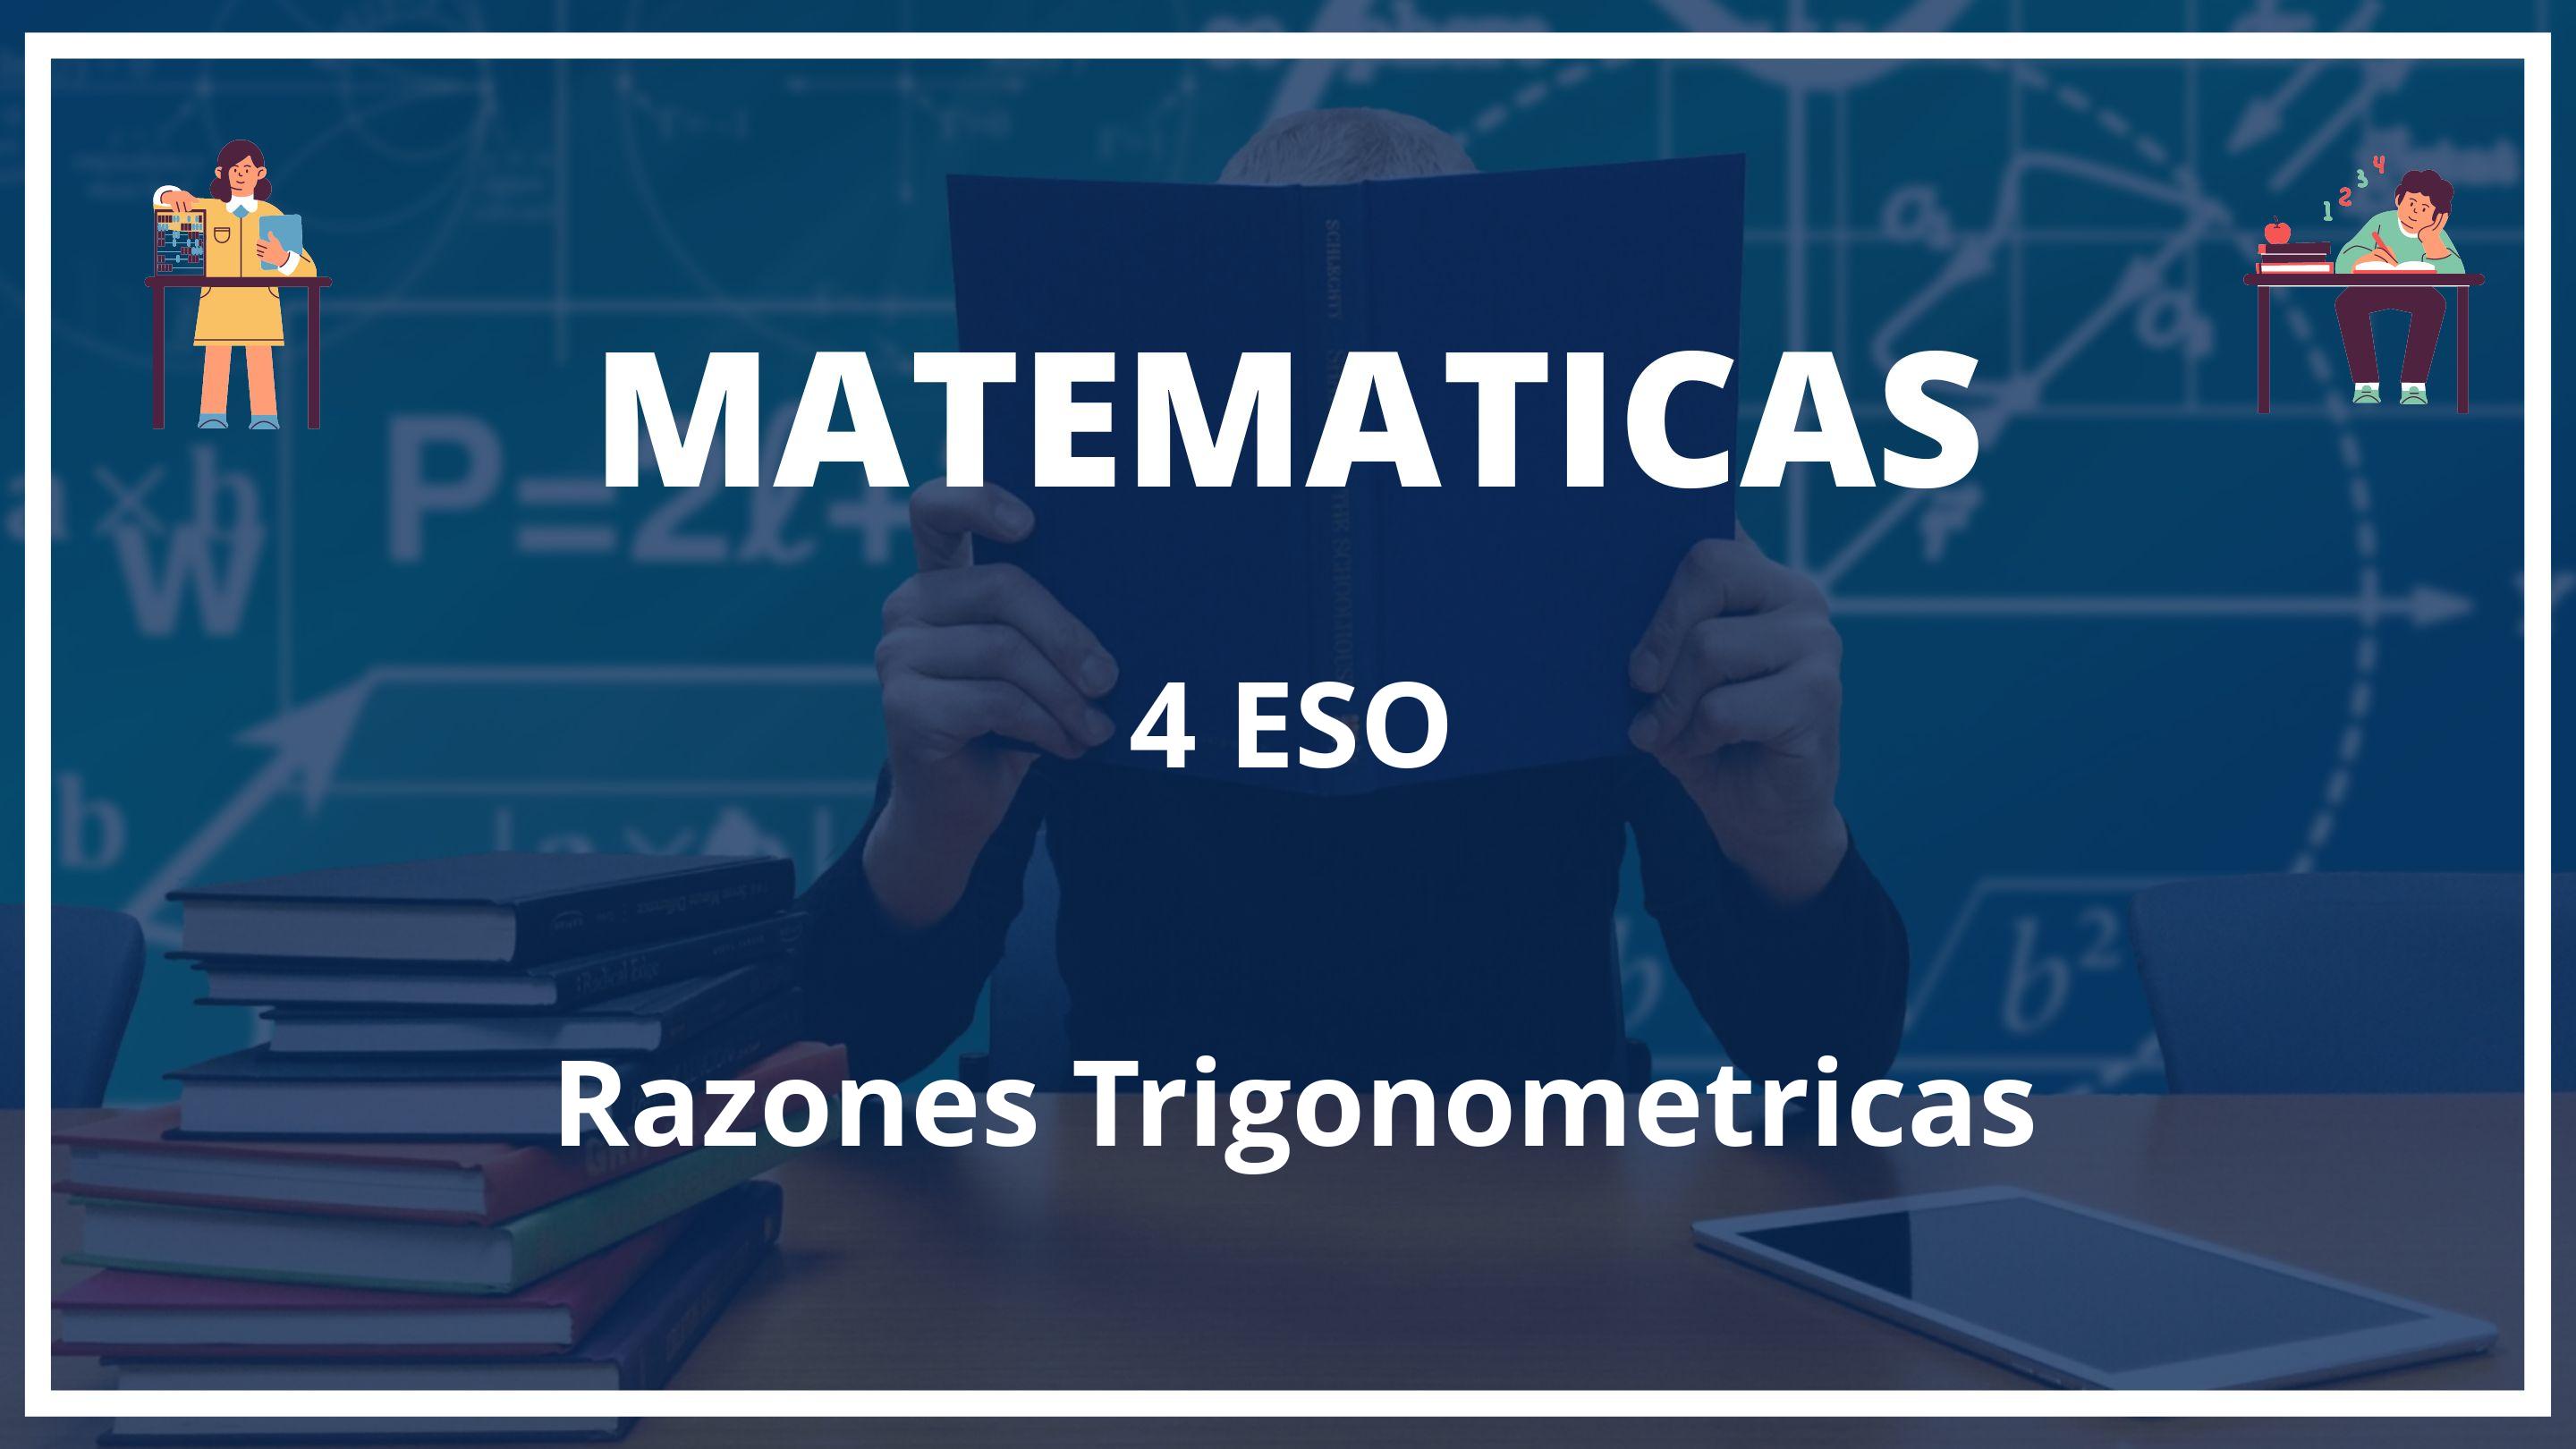 Razones Trigonometricas 4 ESO